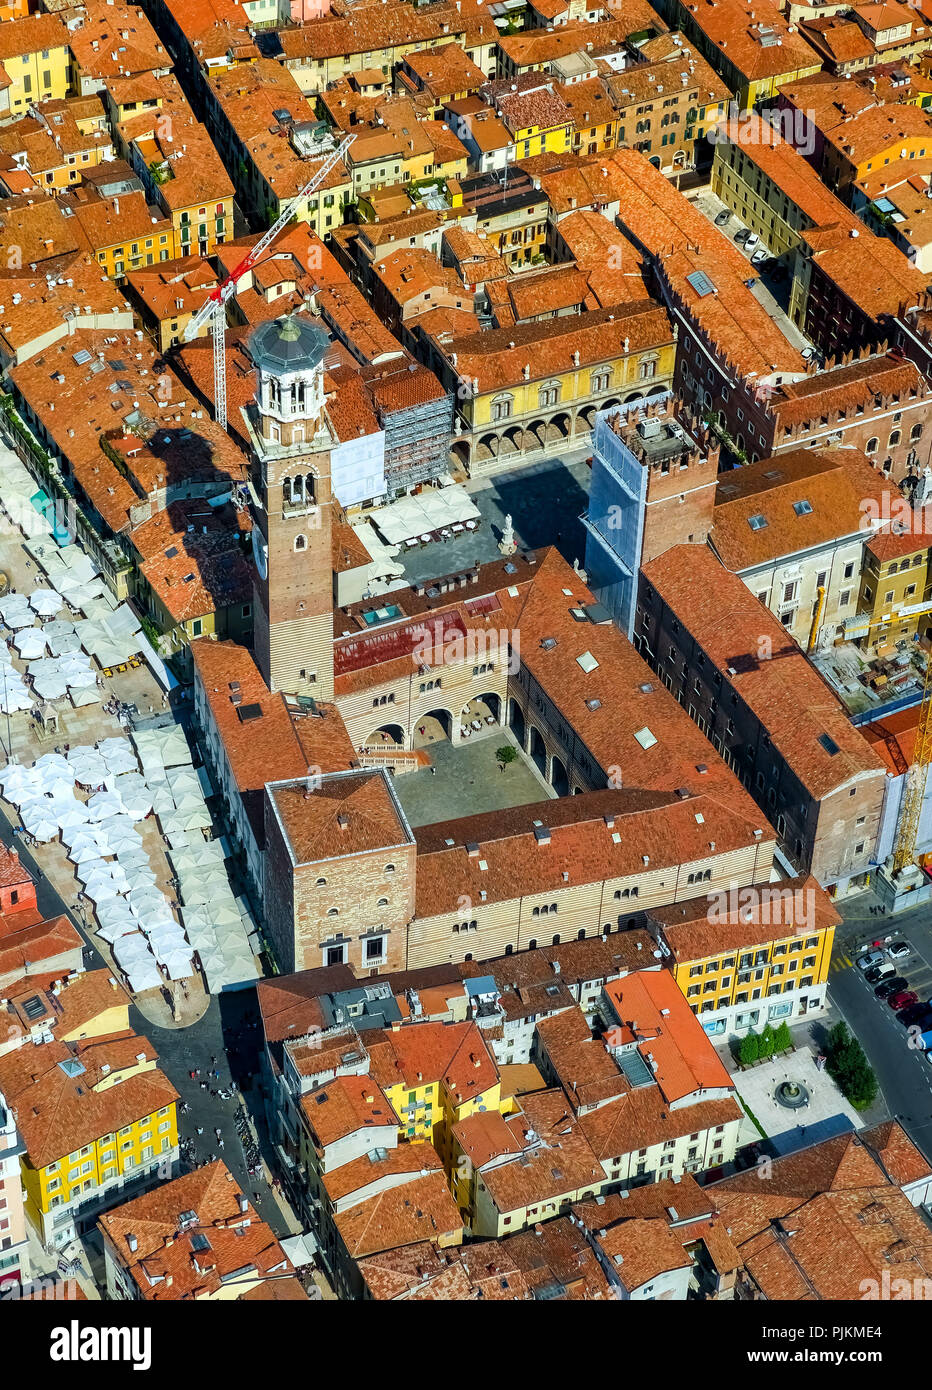 Vue aérienne, la Piazza delle Erbe, Piazza, Domus mercatorum, Torre dei Lamberti, du centre-ville de Vérone, Verona, au nord de l'Italie, Vénétie, Italie Banque D'Images